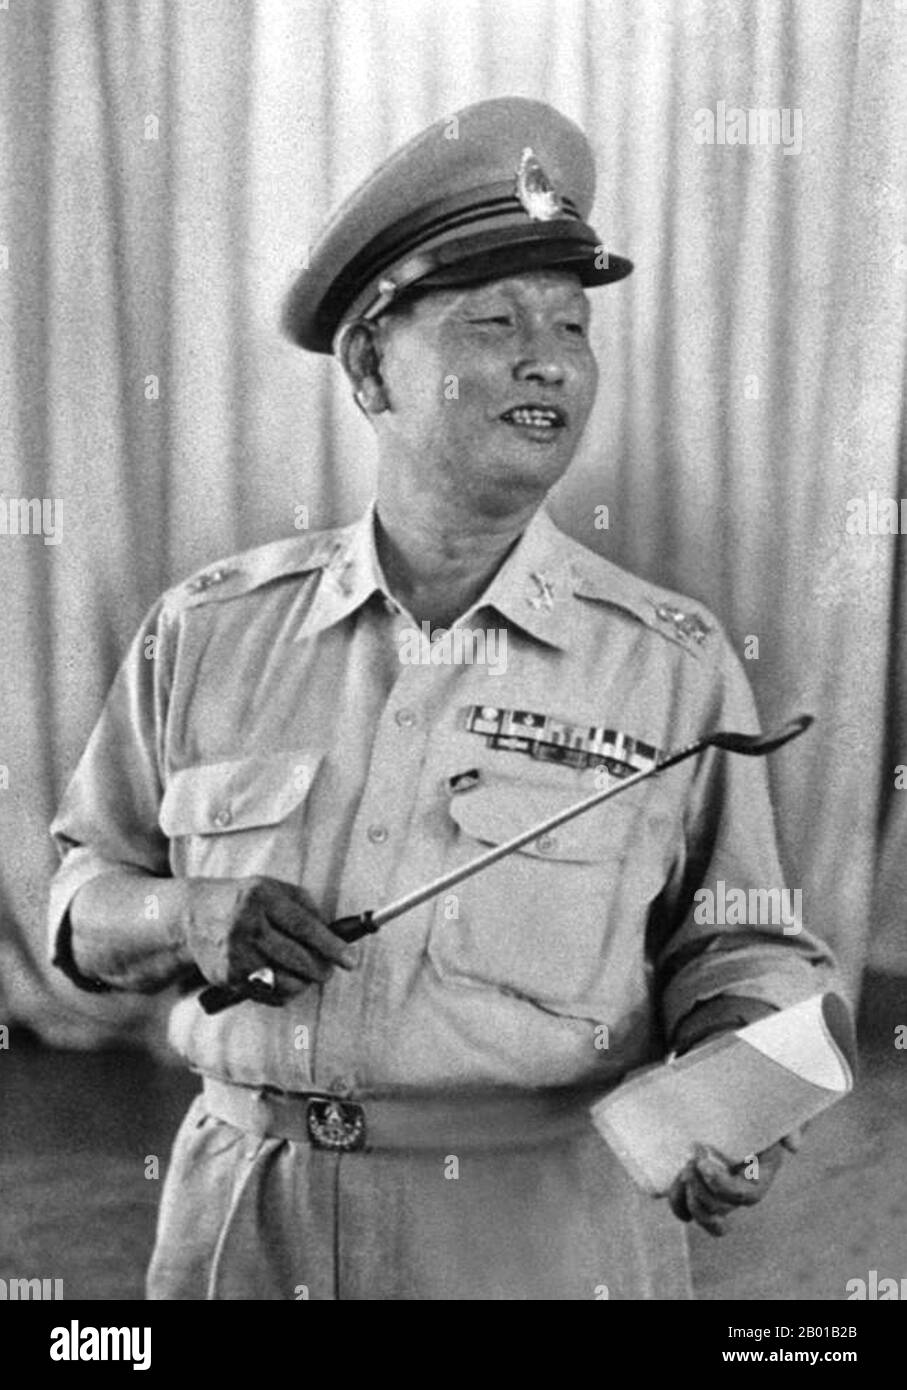 Thailandia: Field Marescial Sarit Thanarat (16 giugno 1908 - 8 dicembre 1963), 11th primo ministro della Thailandia (r. 1959-1963), c.. 1660. Il maresciallo di campo Sarit Thanarat era un soldato di carriera thailandese che ha messo in scena un colpo di stato nel 1957, servendo come primo ministro thailandese dal 1959 fino alla sua morte nel 1963. Nacque a Bangkok, ma si considerò originario di Isan, la regione nord-orientale della Thailandia, dove crebbe. Il regime di Salit fu il più repressivo e autoritario della storia tailandese moderna, abrogando la costituzione, sciogliendo il parlamento e vendicando ogni potere nel suo partito rivoluzionario appena formato. Foto Stock